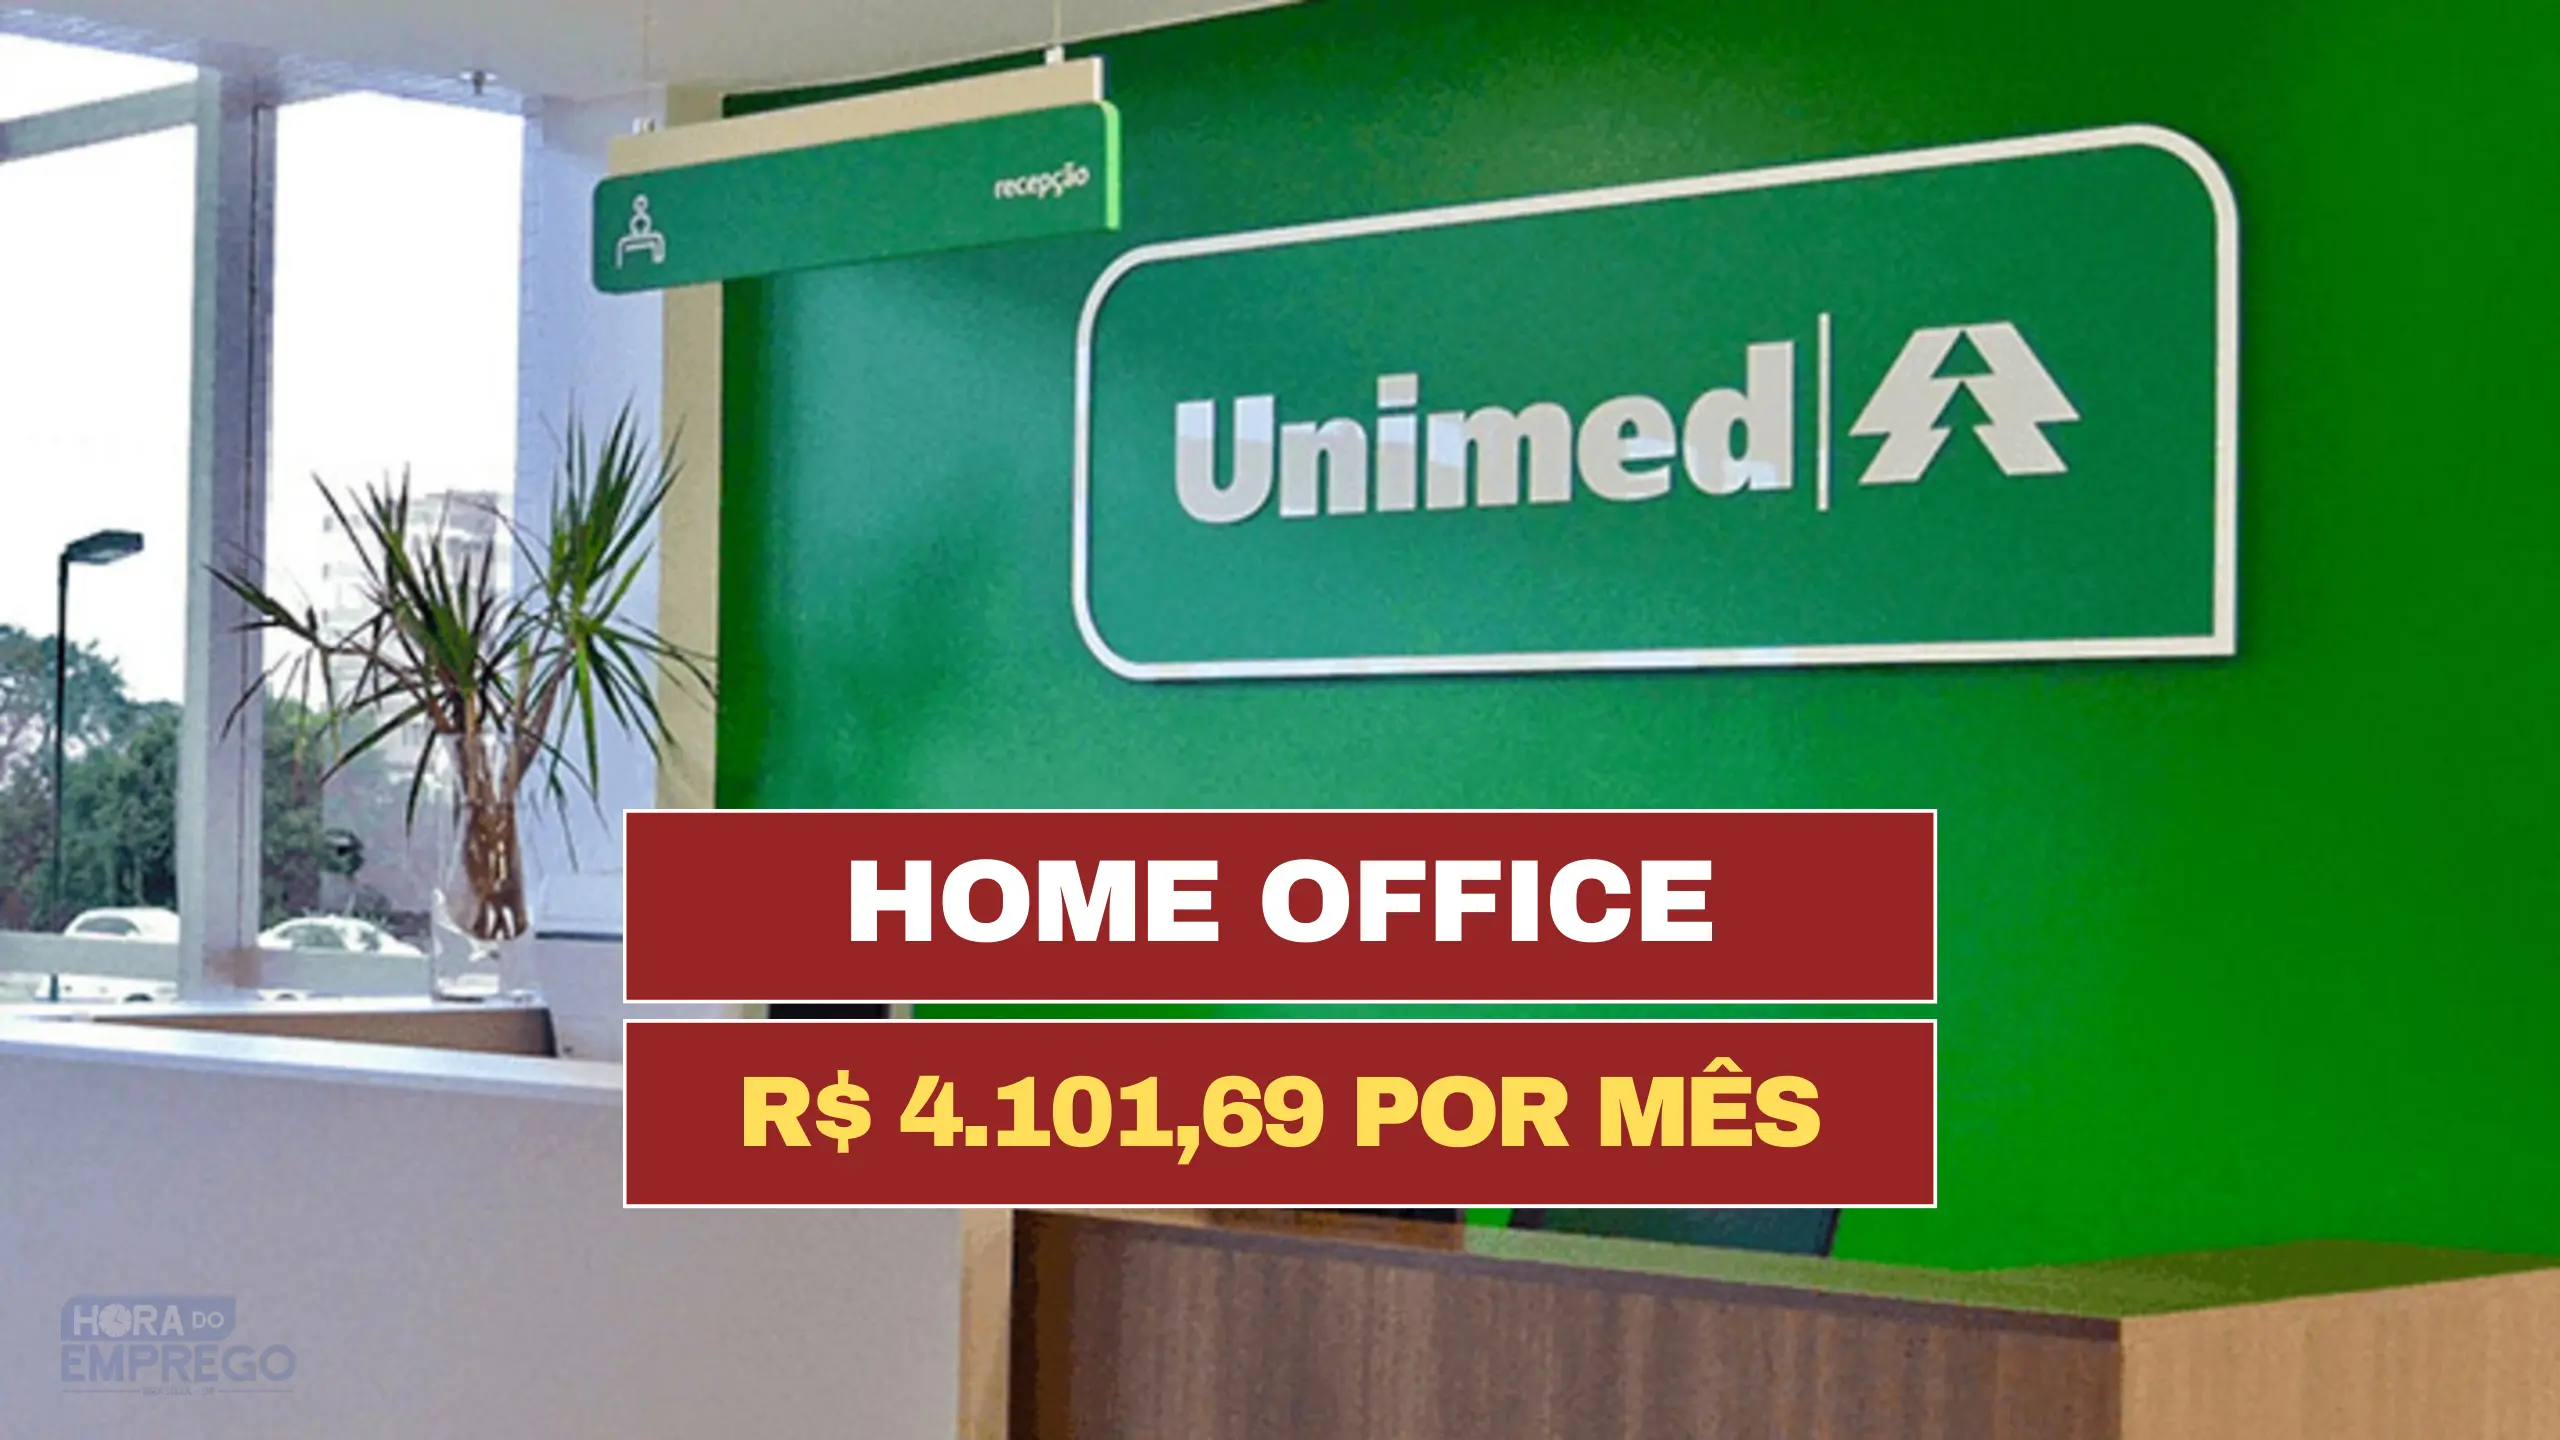 HOME OFFICE: UNIMED abre PROCESSO SELETIVO para vaga HOME OFFICE com salário de R$ 4.101,69 por mês